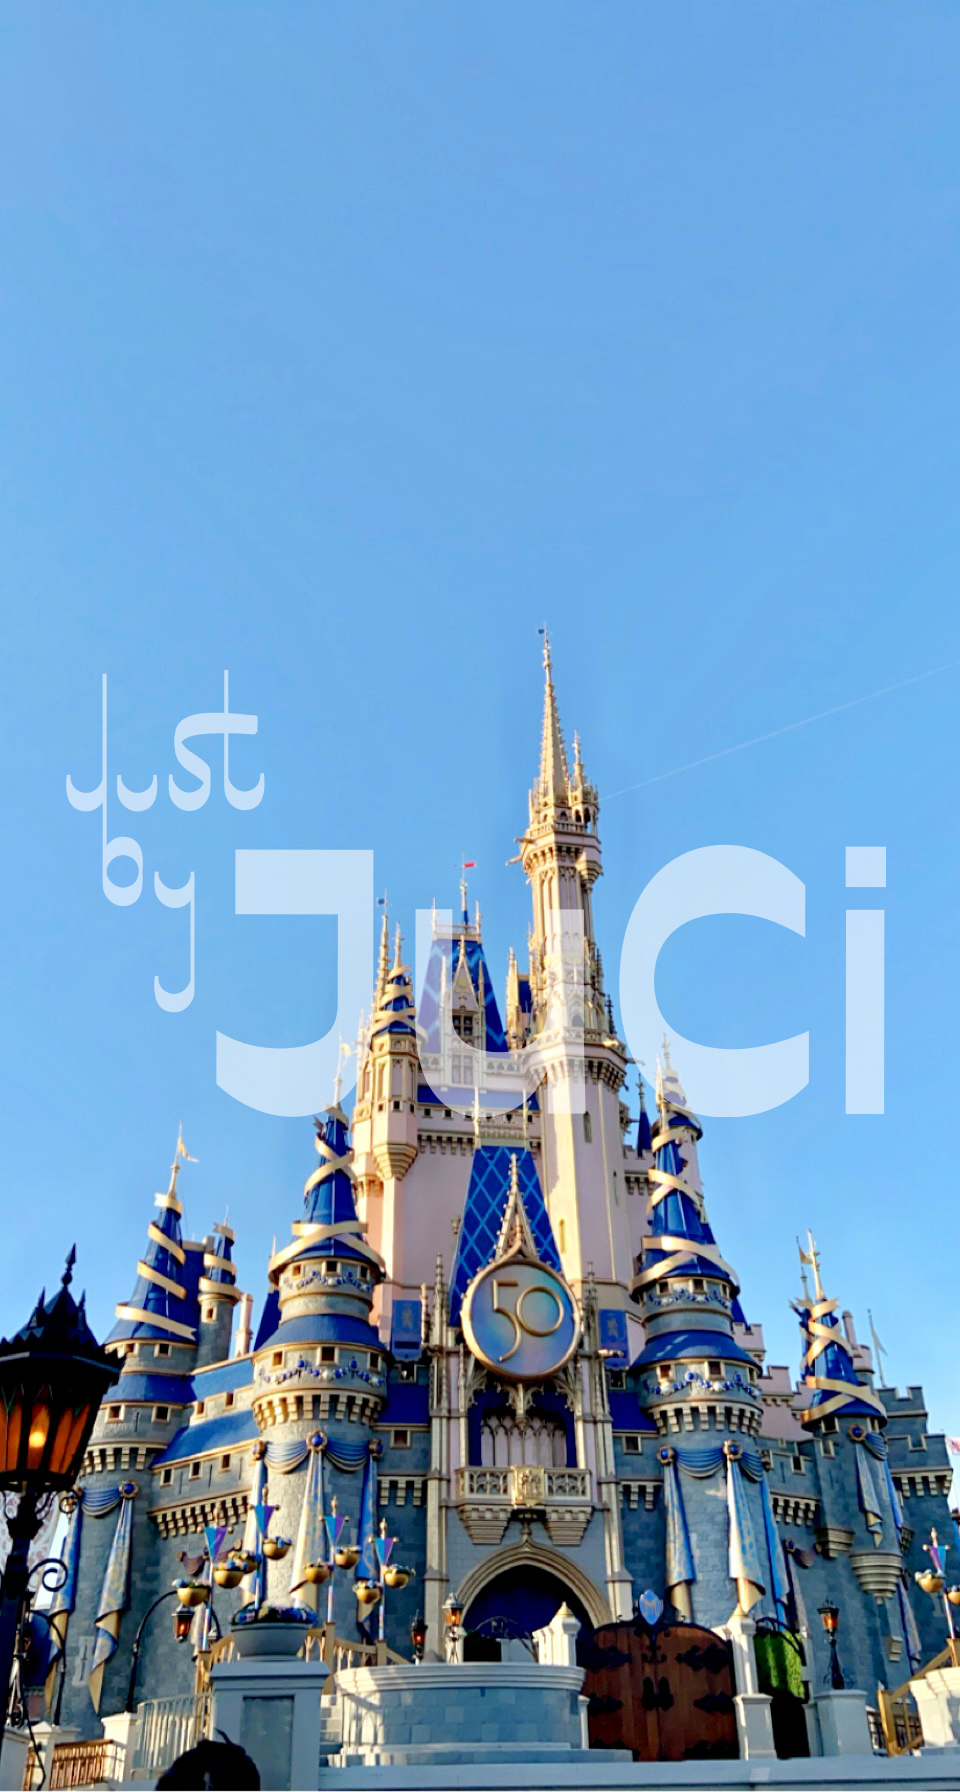 Cinderella's Castle - Disney World's 50th Anniversary